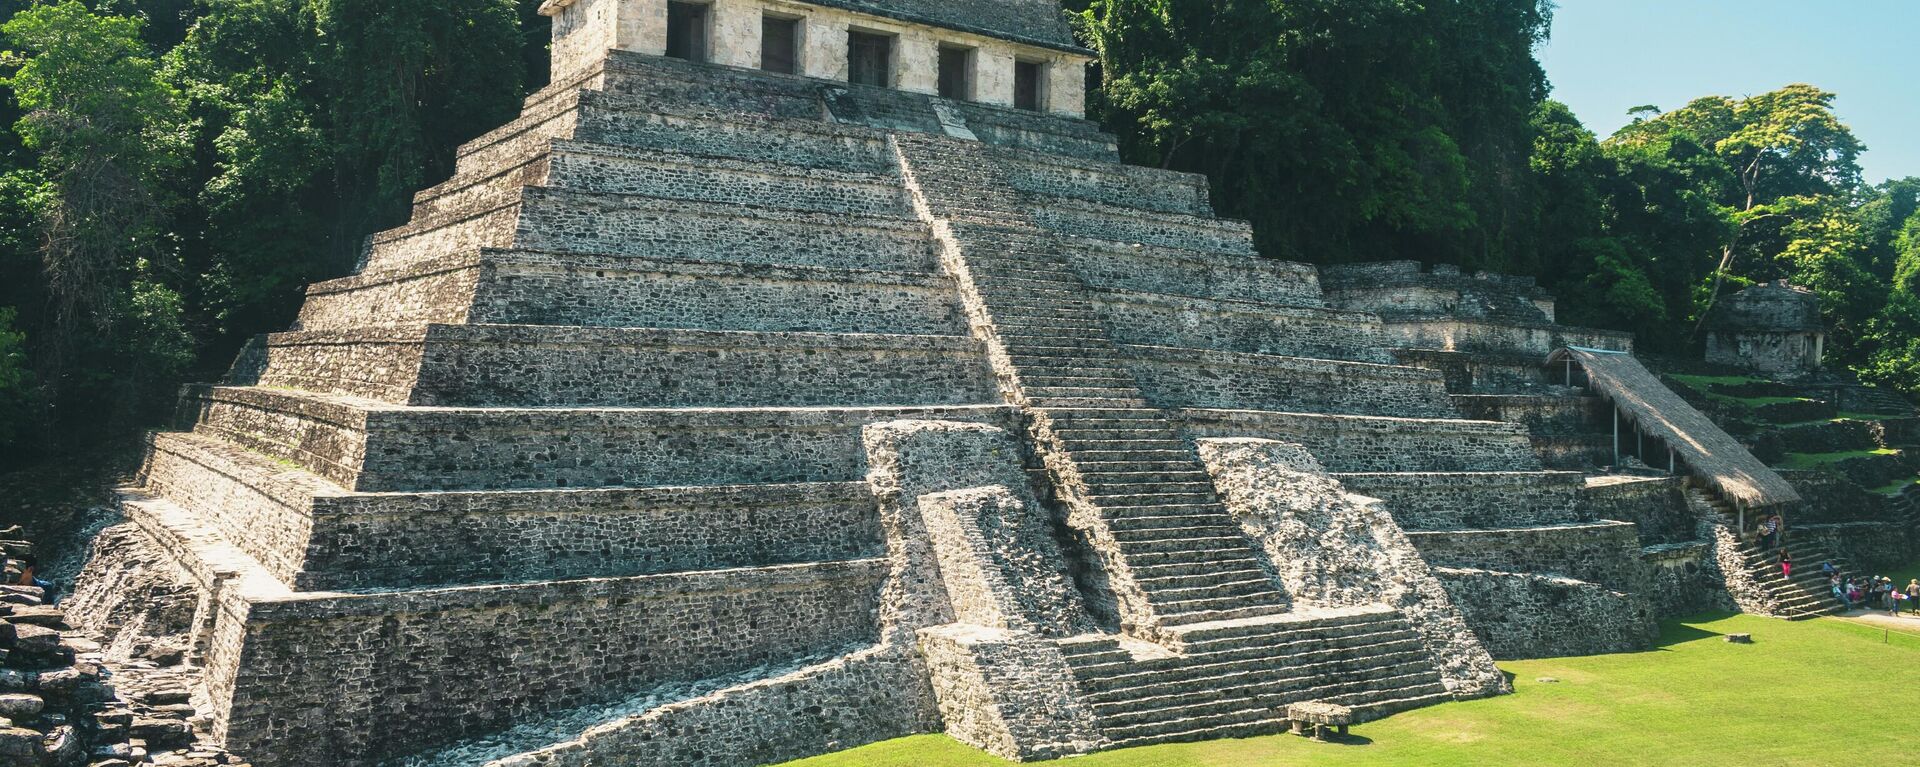 Pirámide de Palenque  - Sputnik Mundo, 1920, 11.05.2021